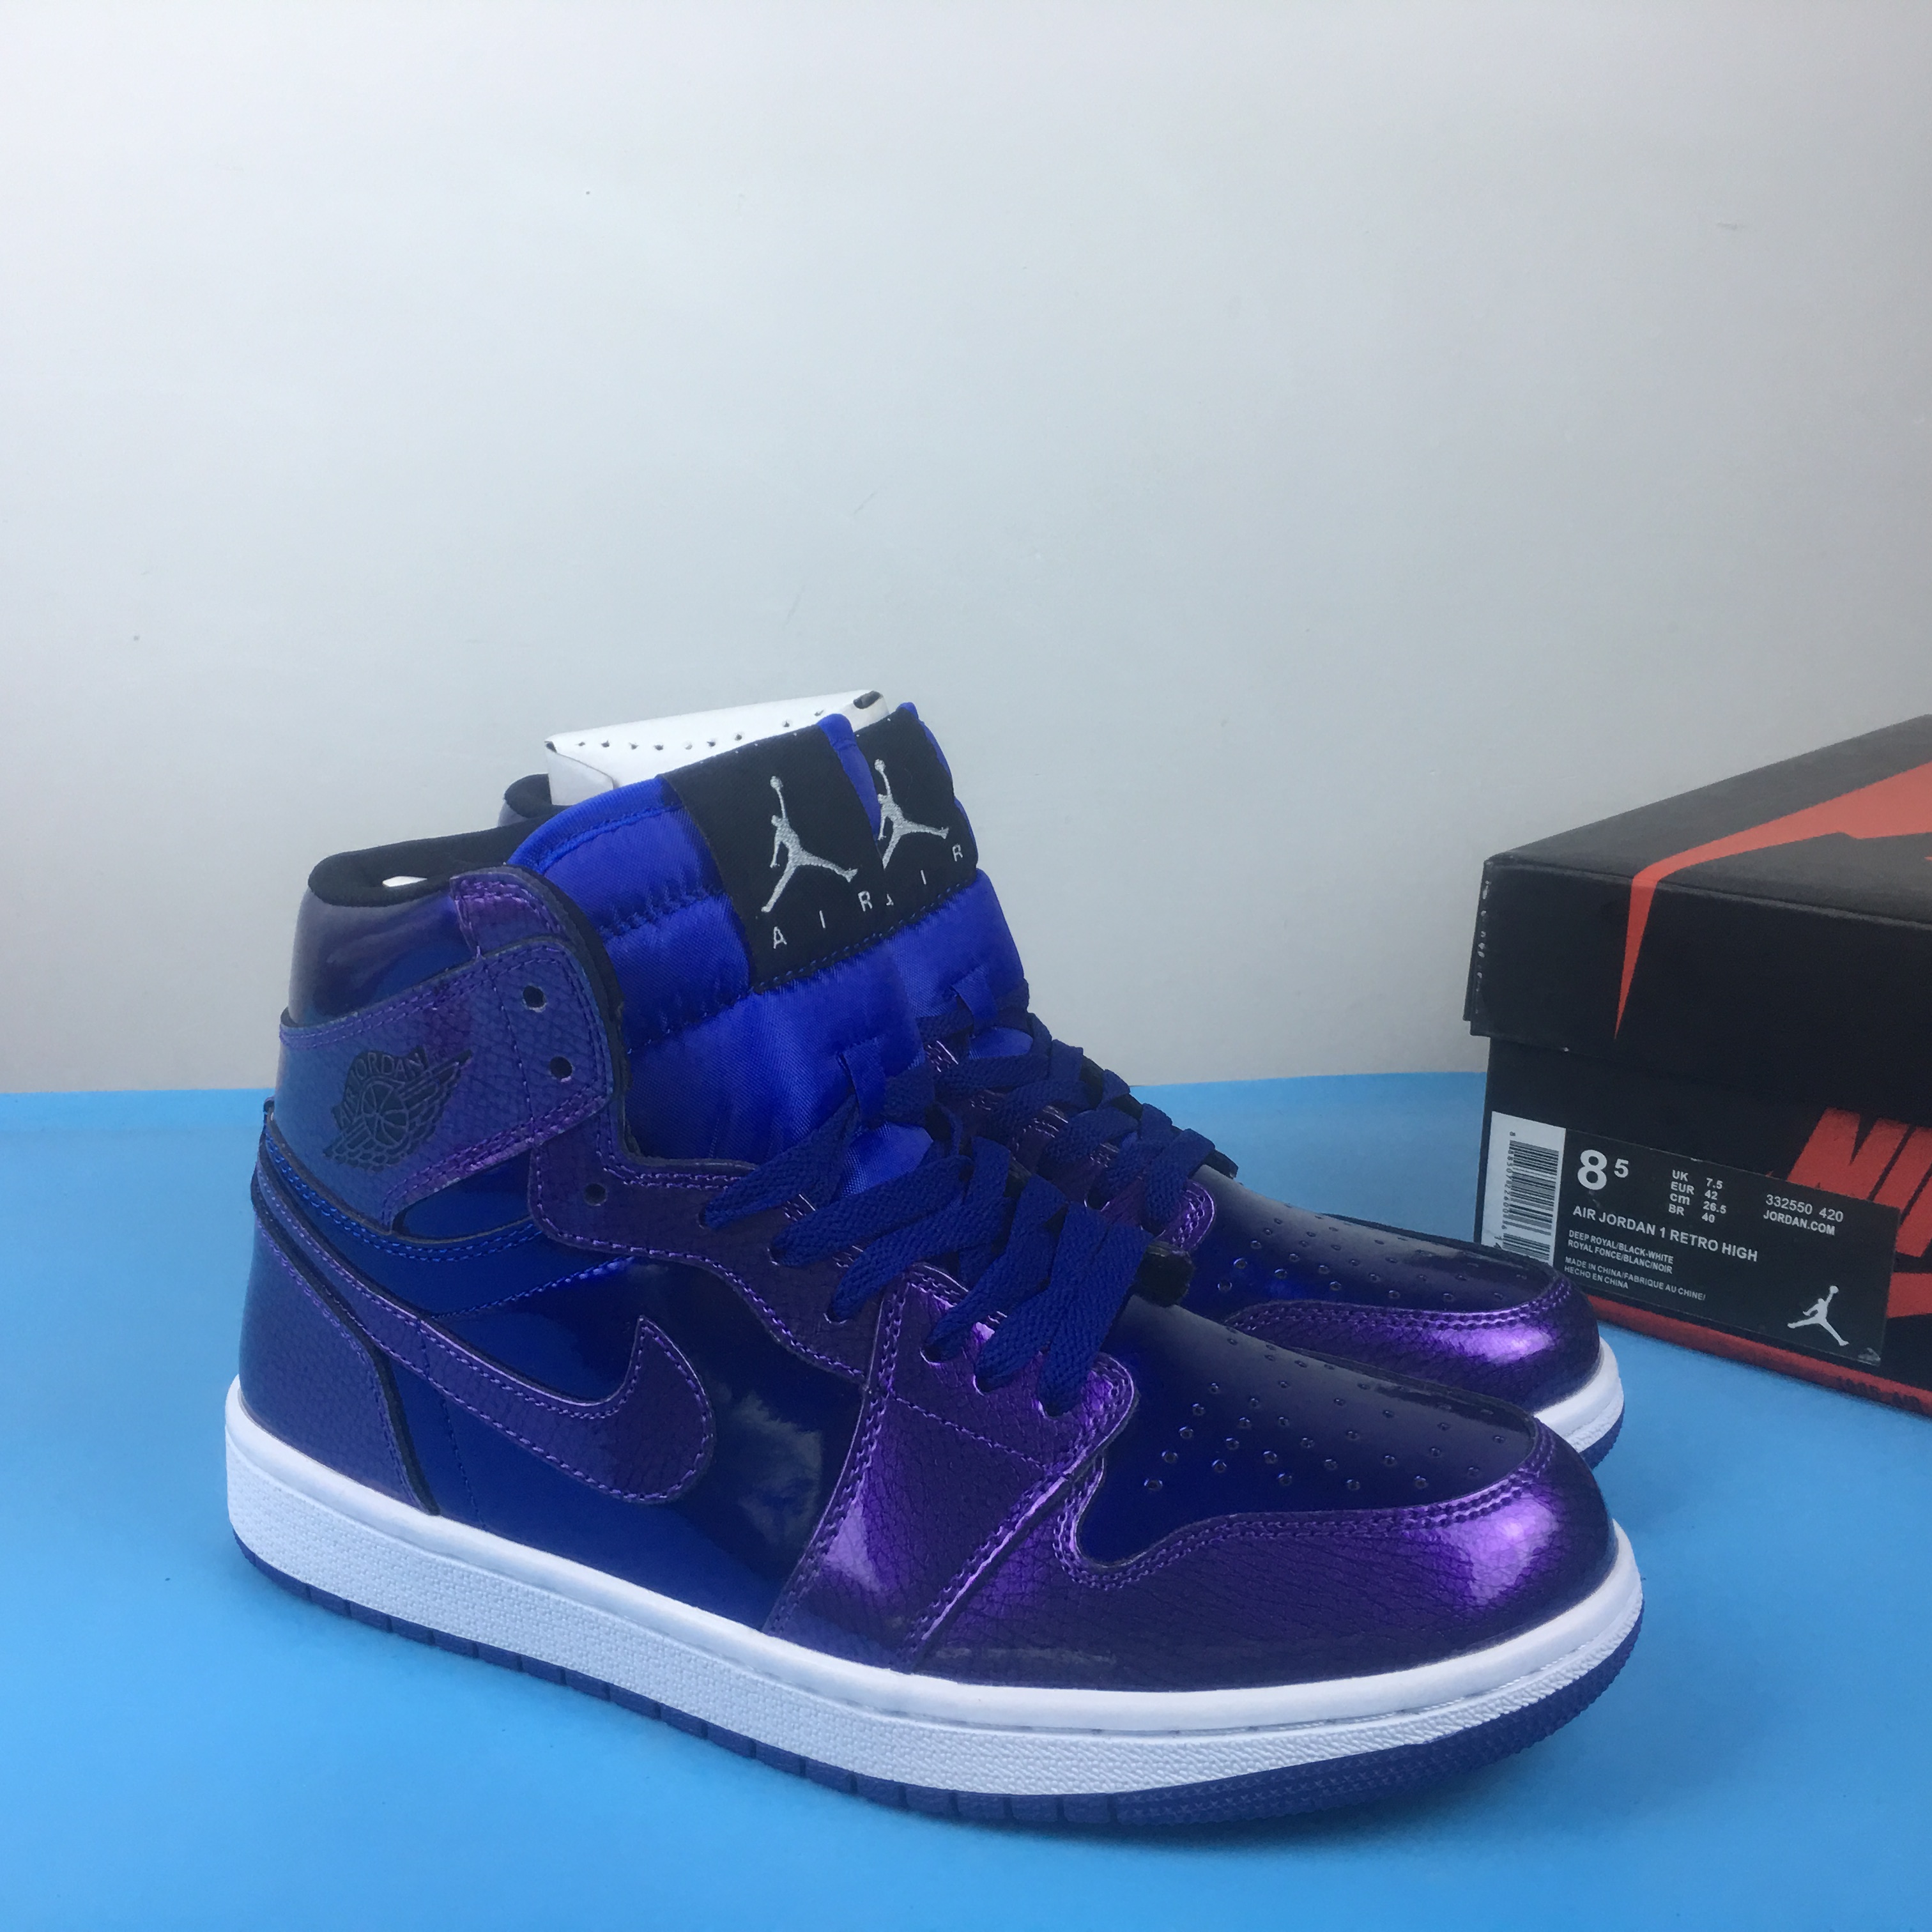 Air Jordan 1 Retro High Shine Blue Shoes - Click Image to Close